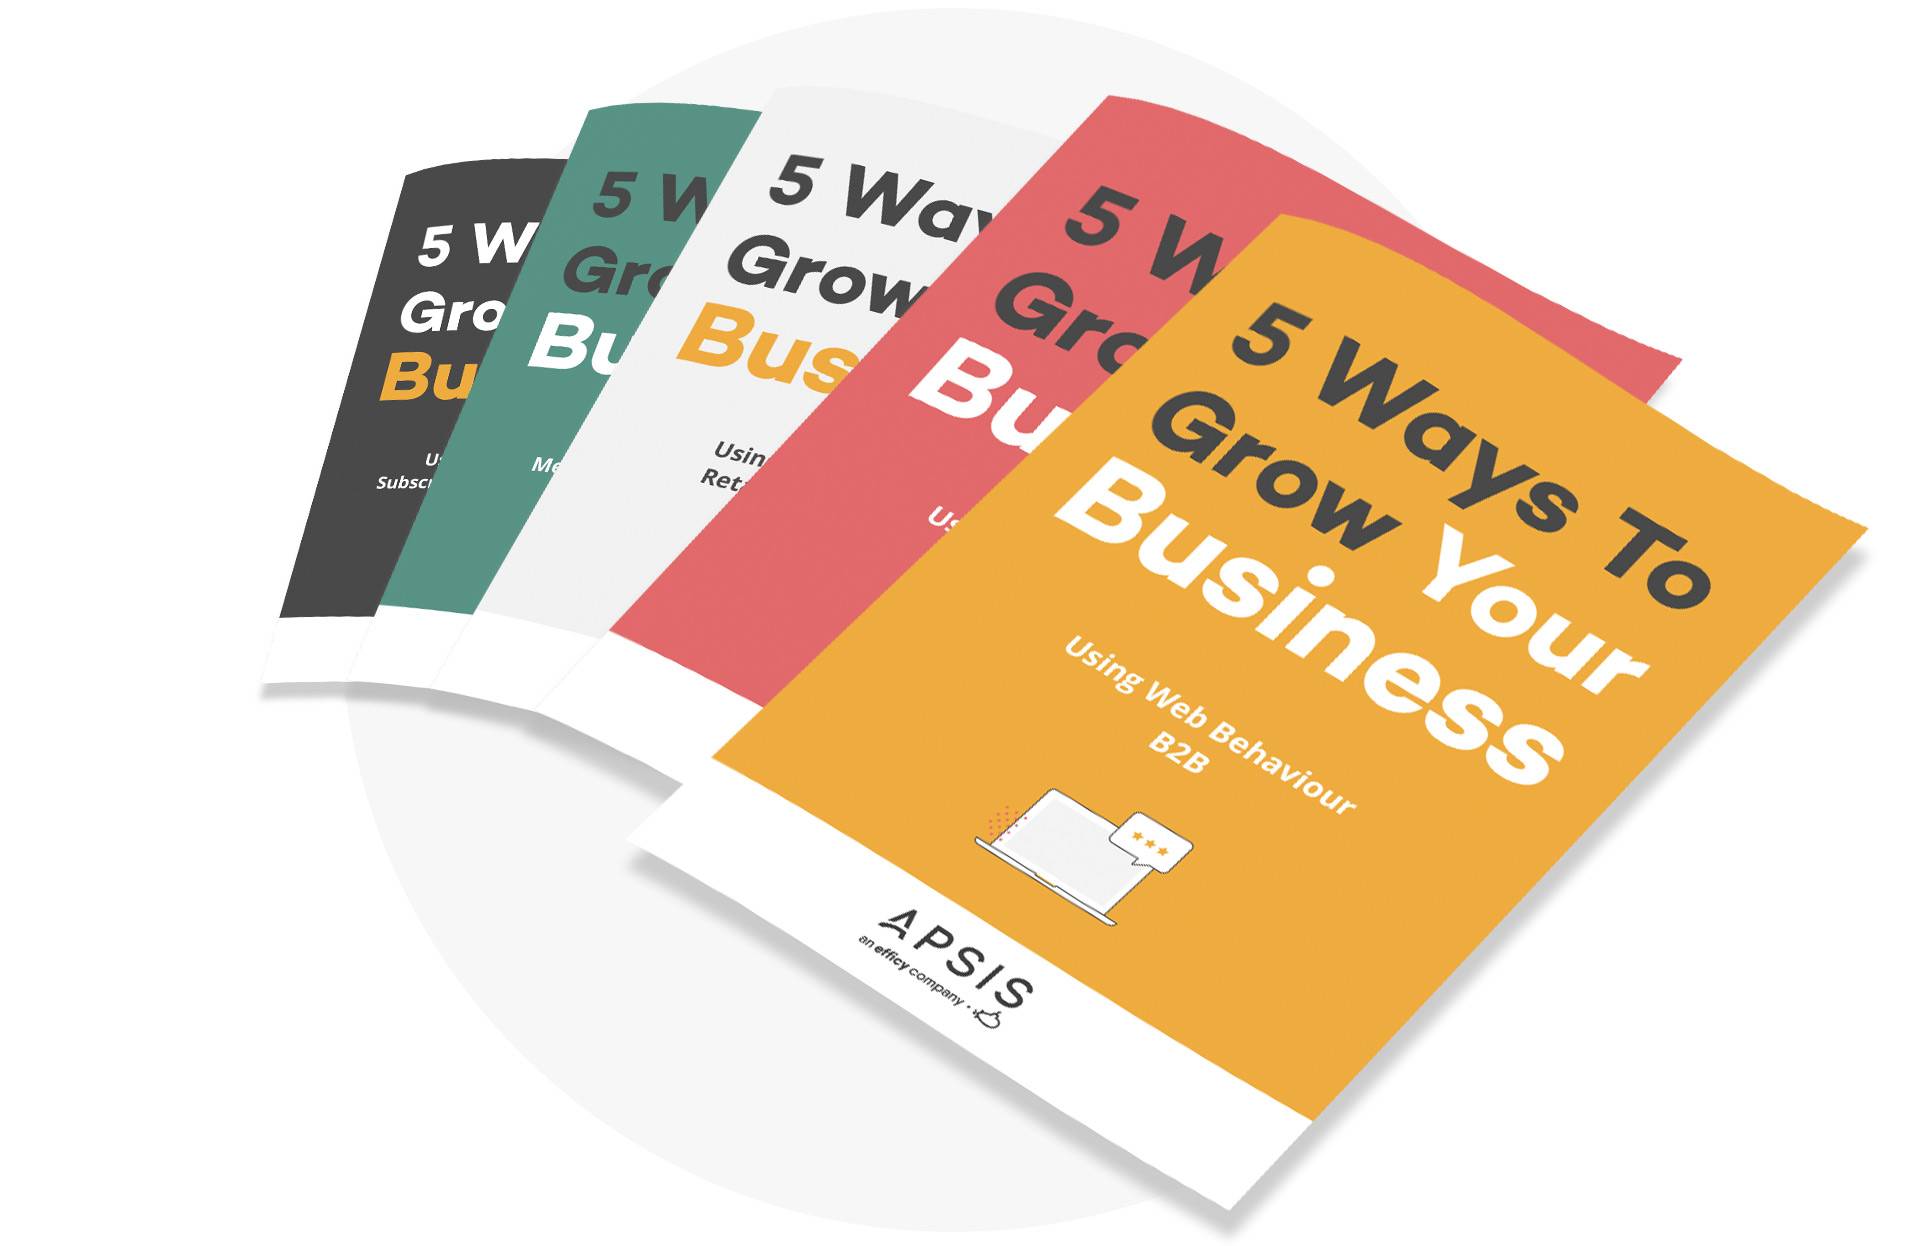 5 ways to grow your business handbook